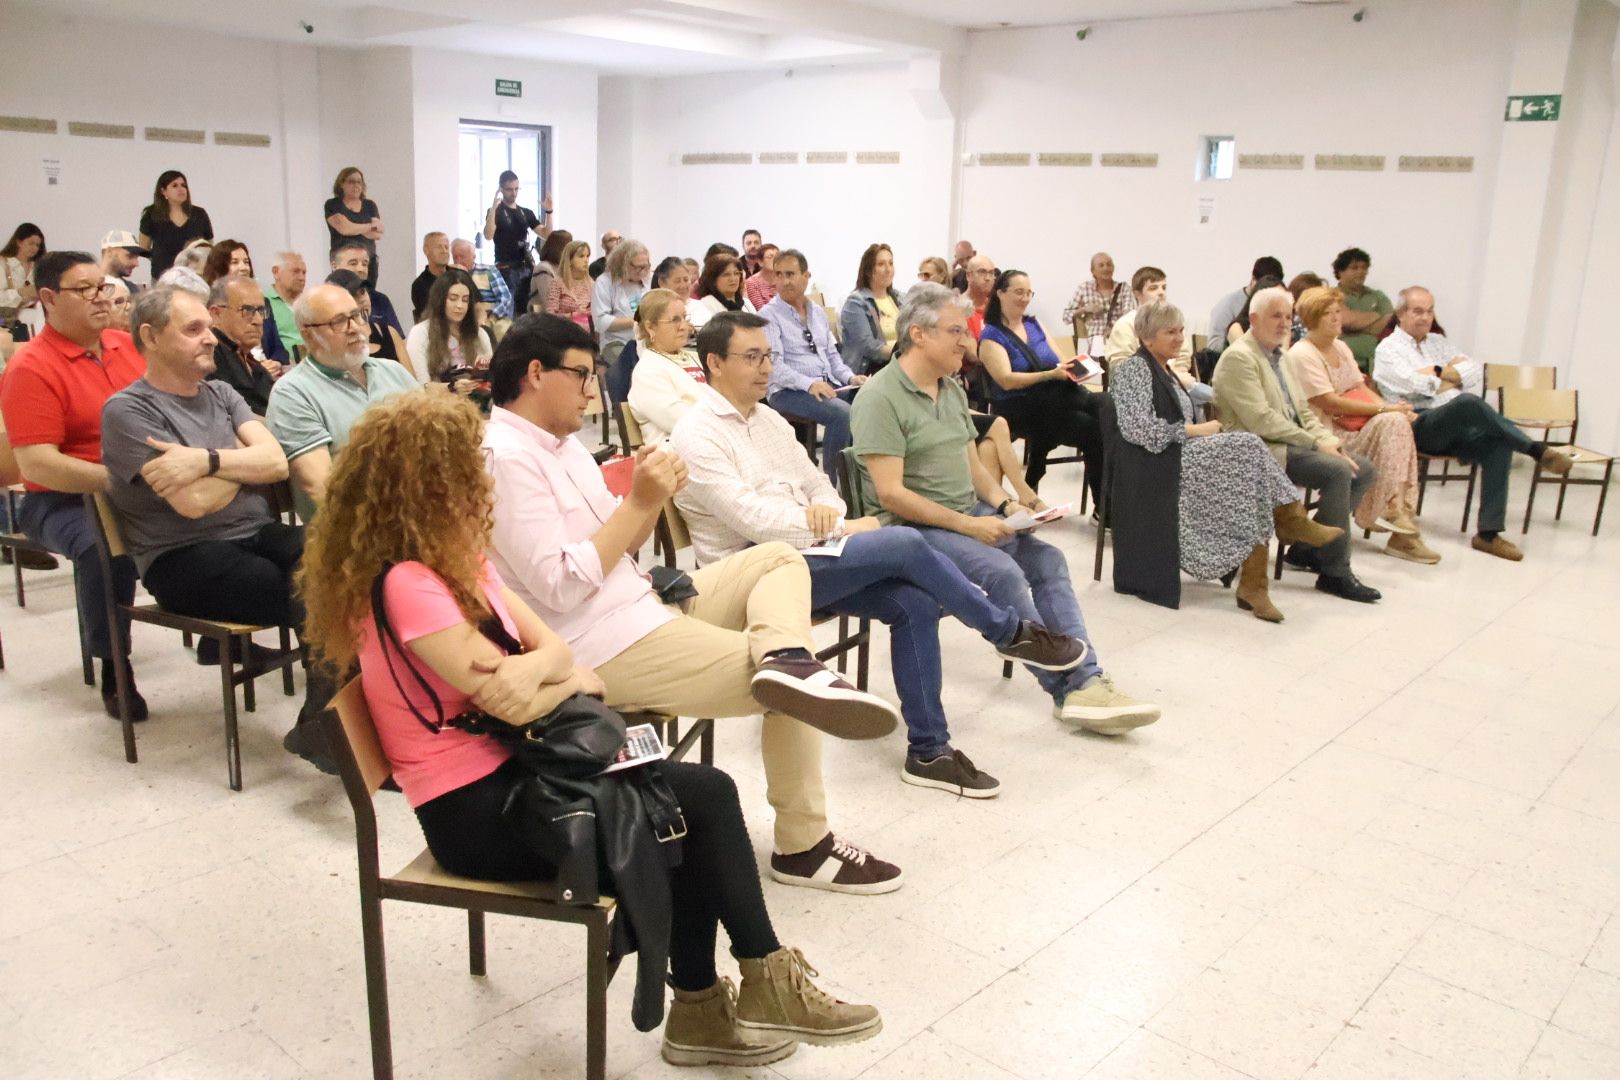 Acto de presentación de la candidatura socialista al Ayuntamiento de Salamanca que encabeza José Luis Mateos